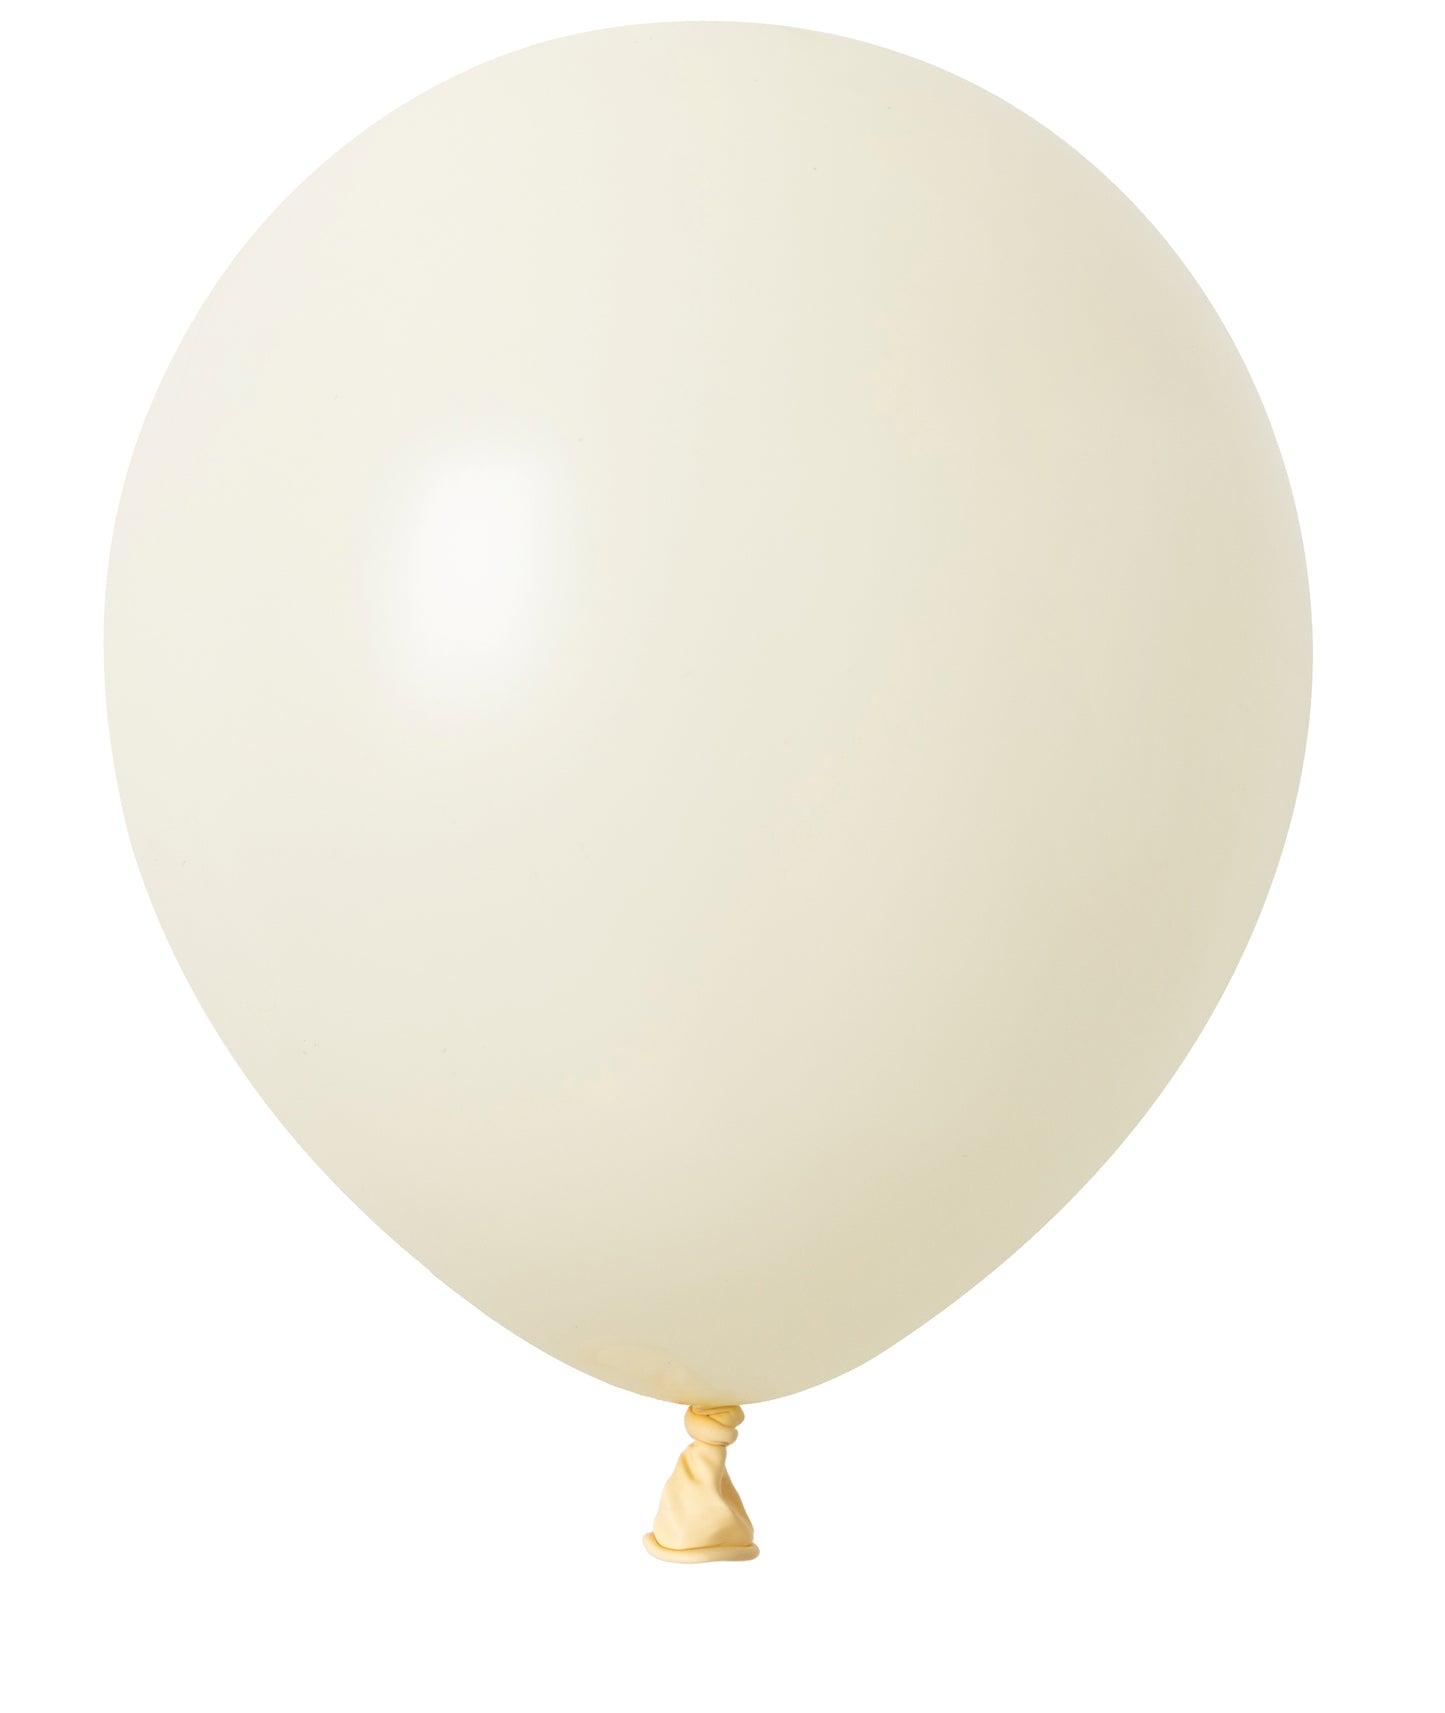 Winntex Premium 18" Ivory Latex Balloon 25ct